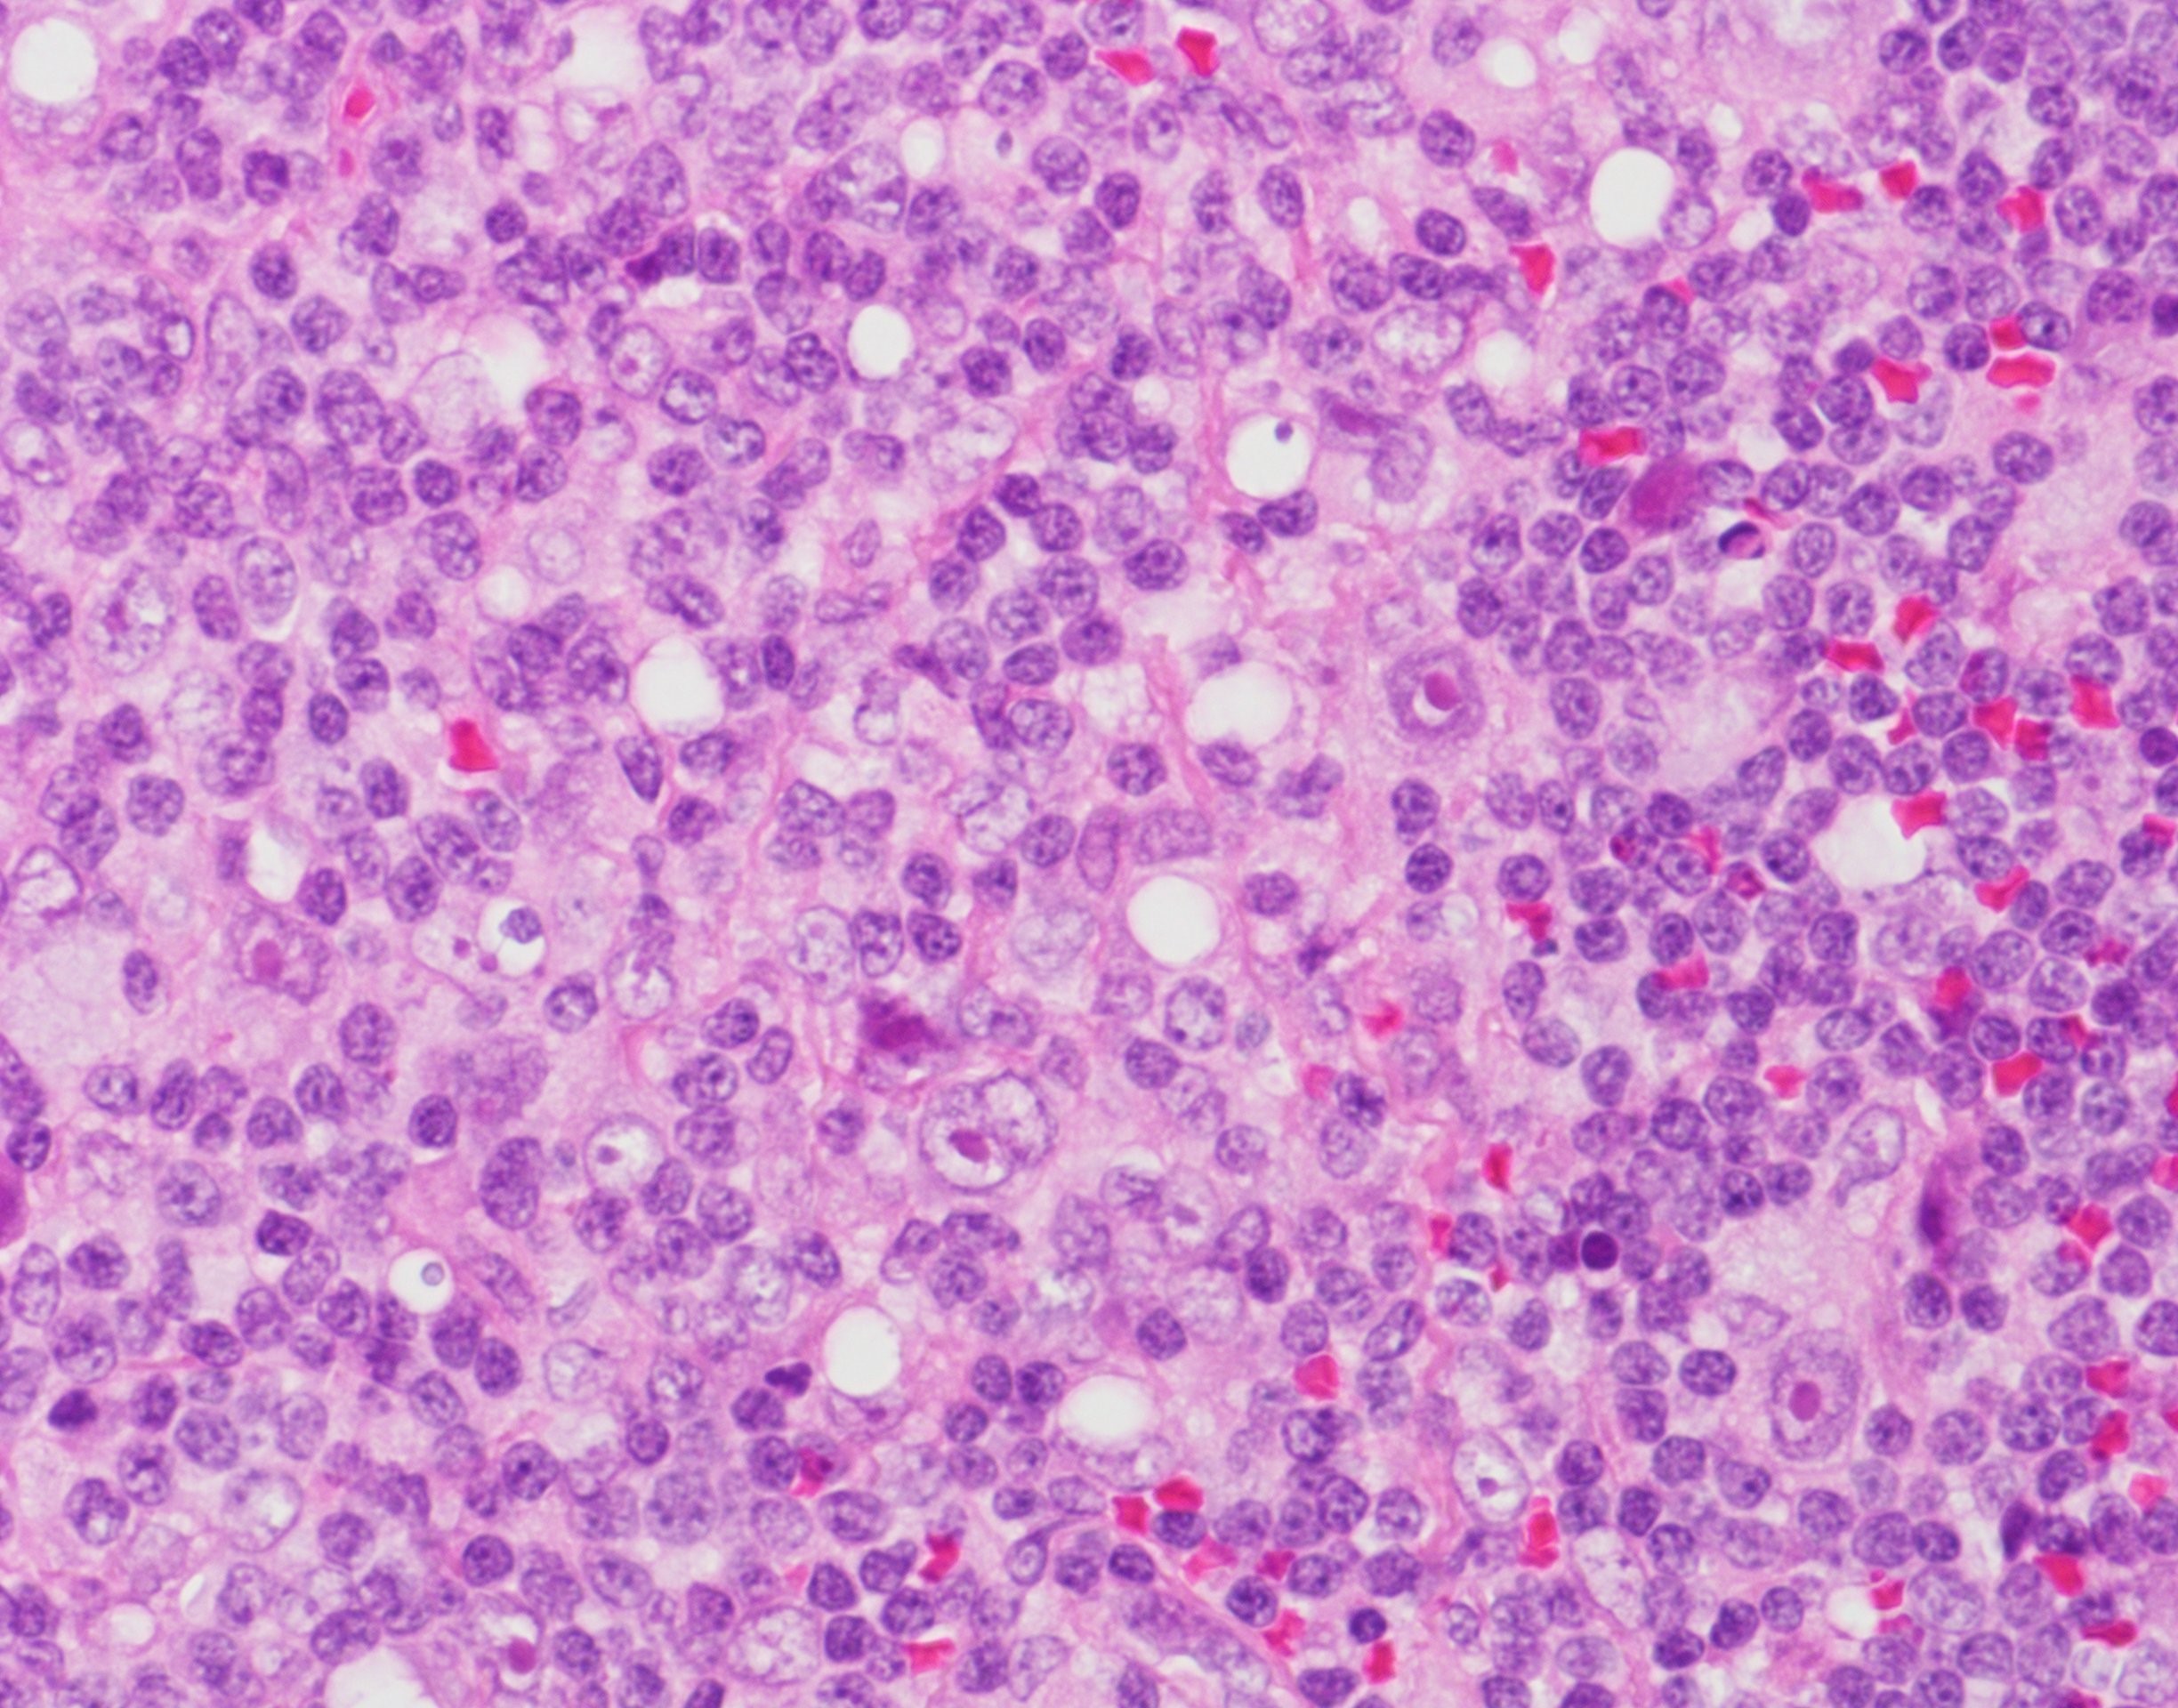 びまん 性 大 細胞 型 b 細胞 リンパ腫